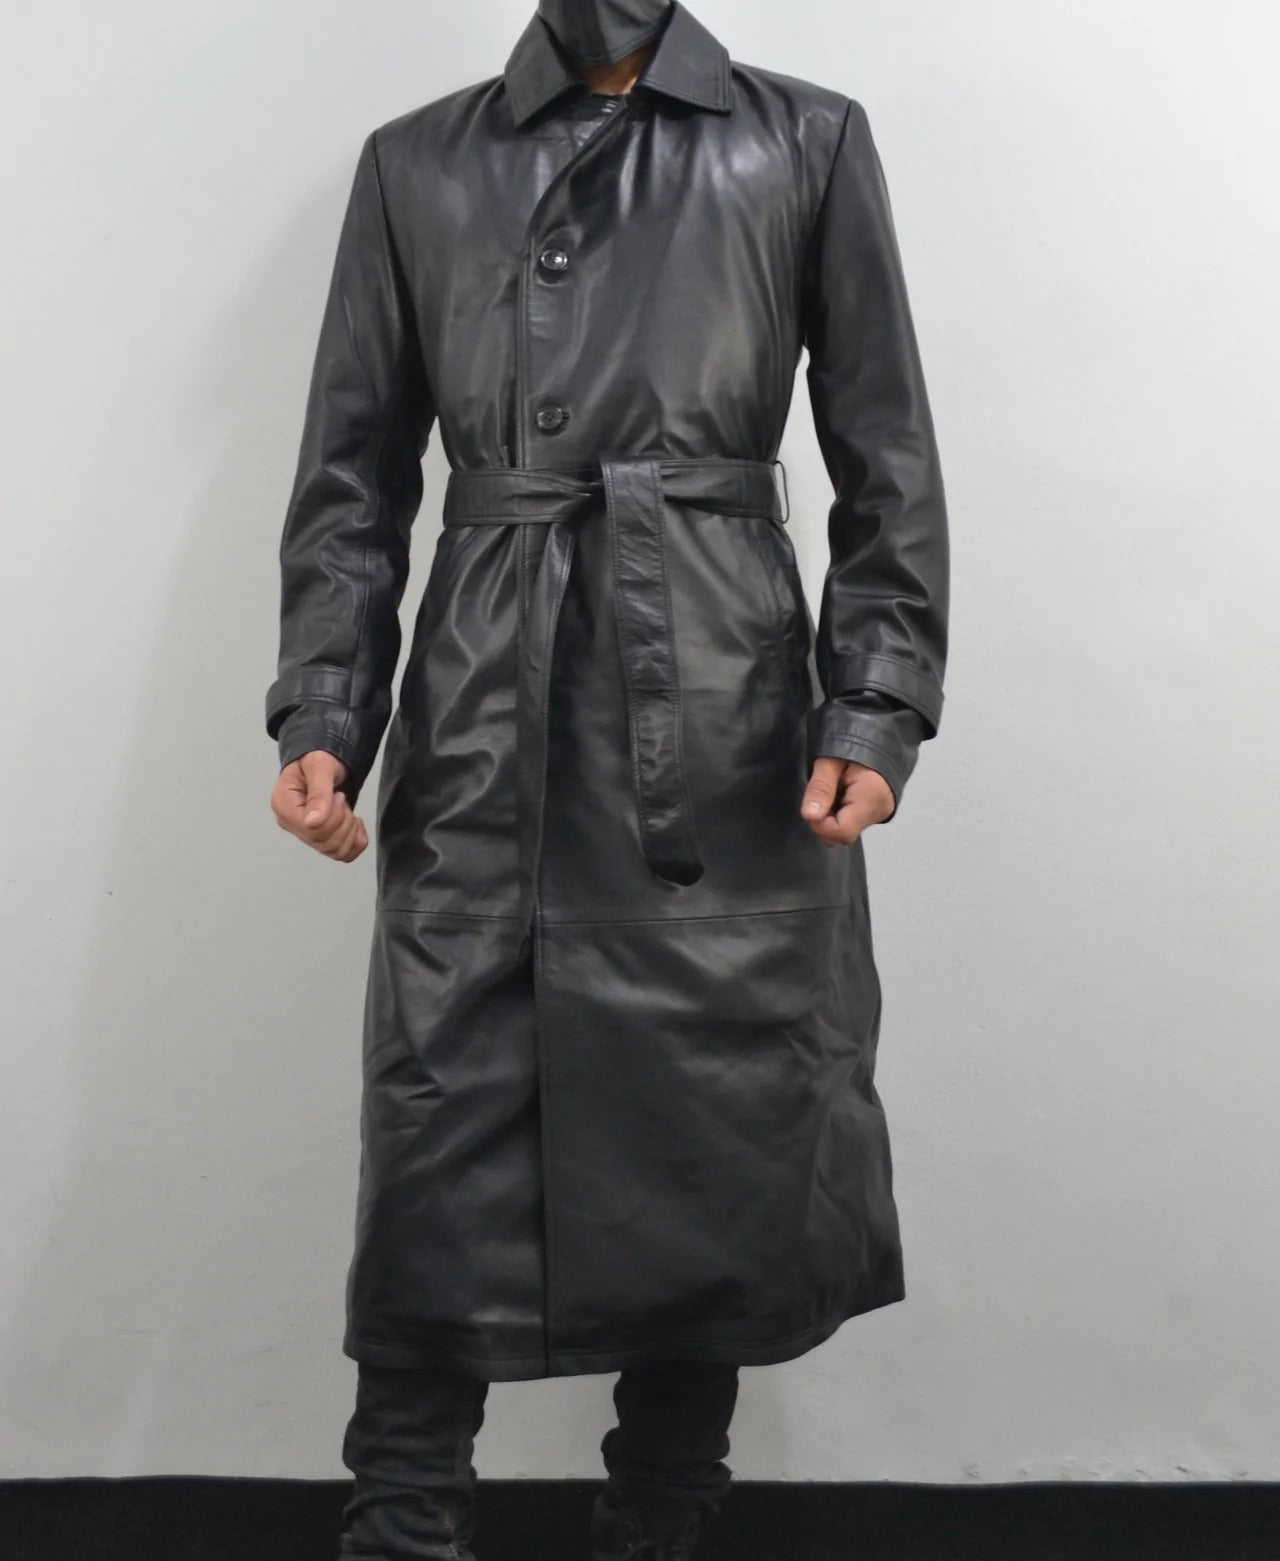 Full Length Black Leather Trench Coat for Men